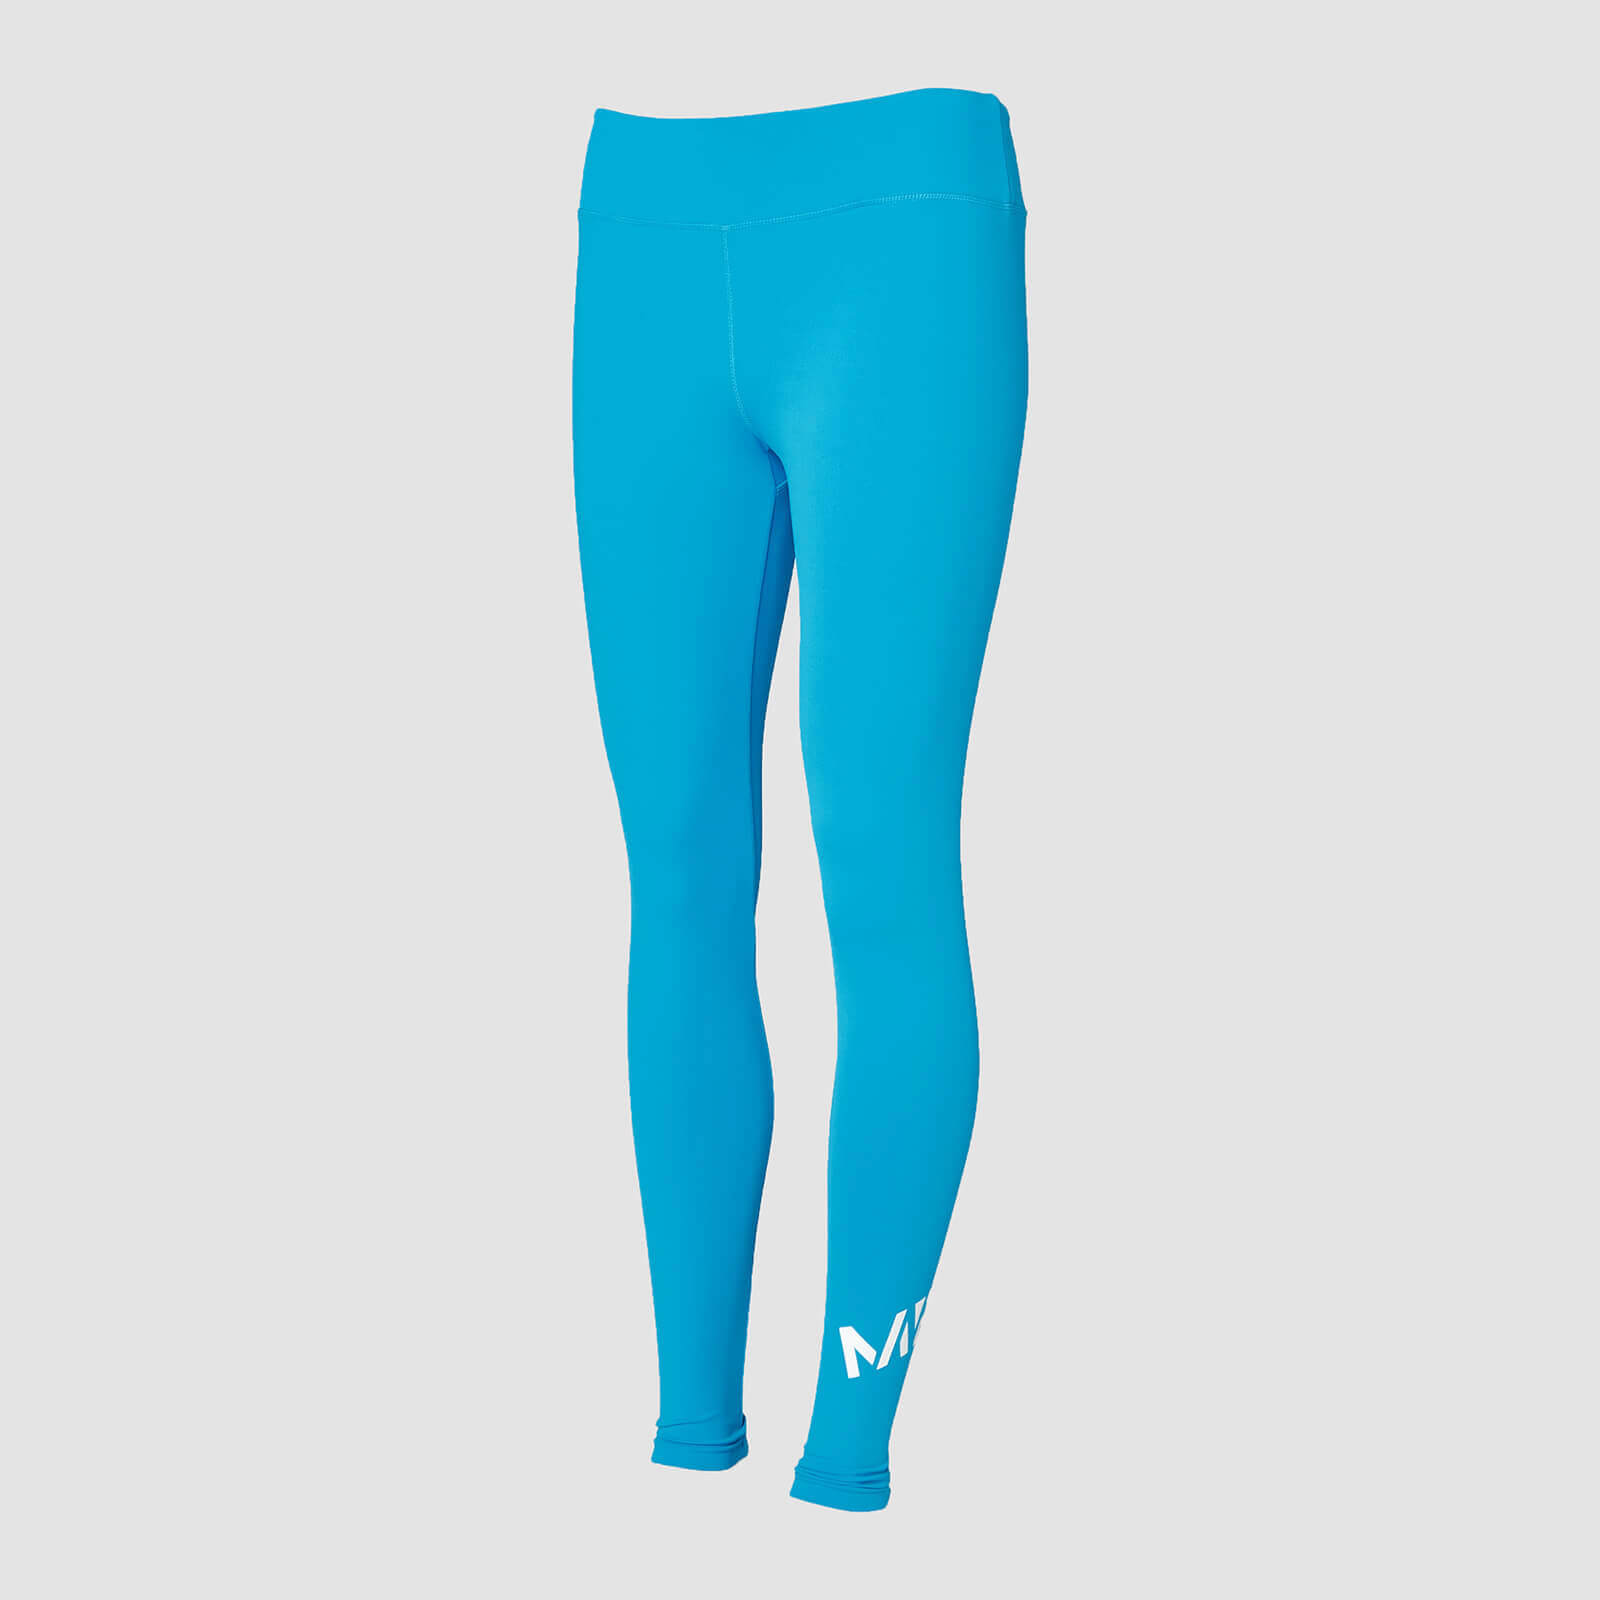 กางเกงเลกกิ้งเทรนนิ่งผู้หญิง MP - สีฟ้าน้ำทะเล - XS